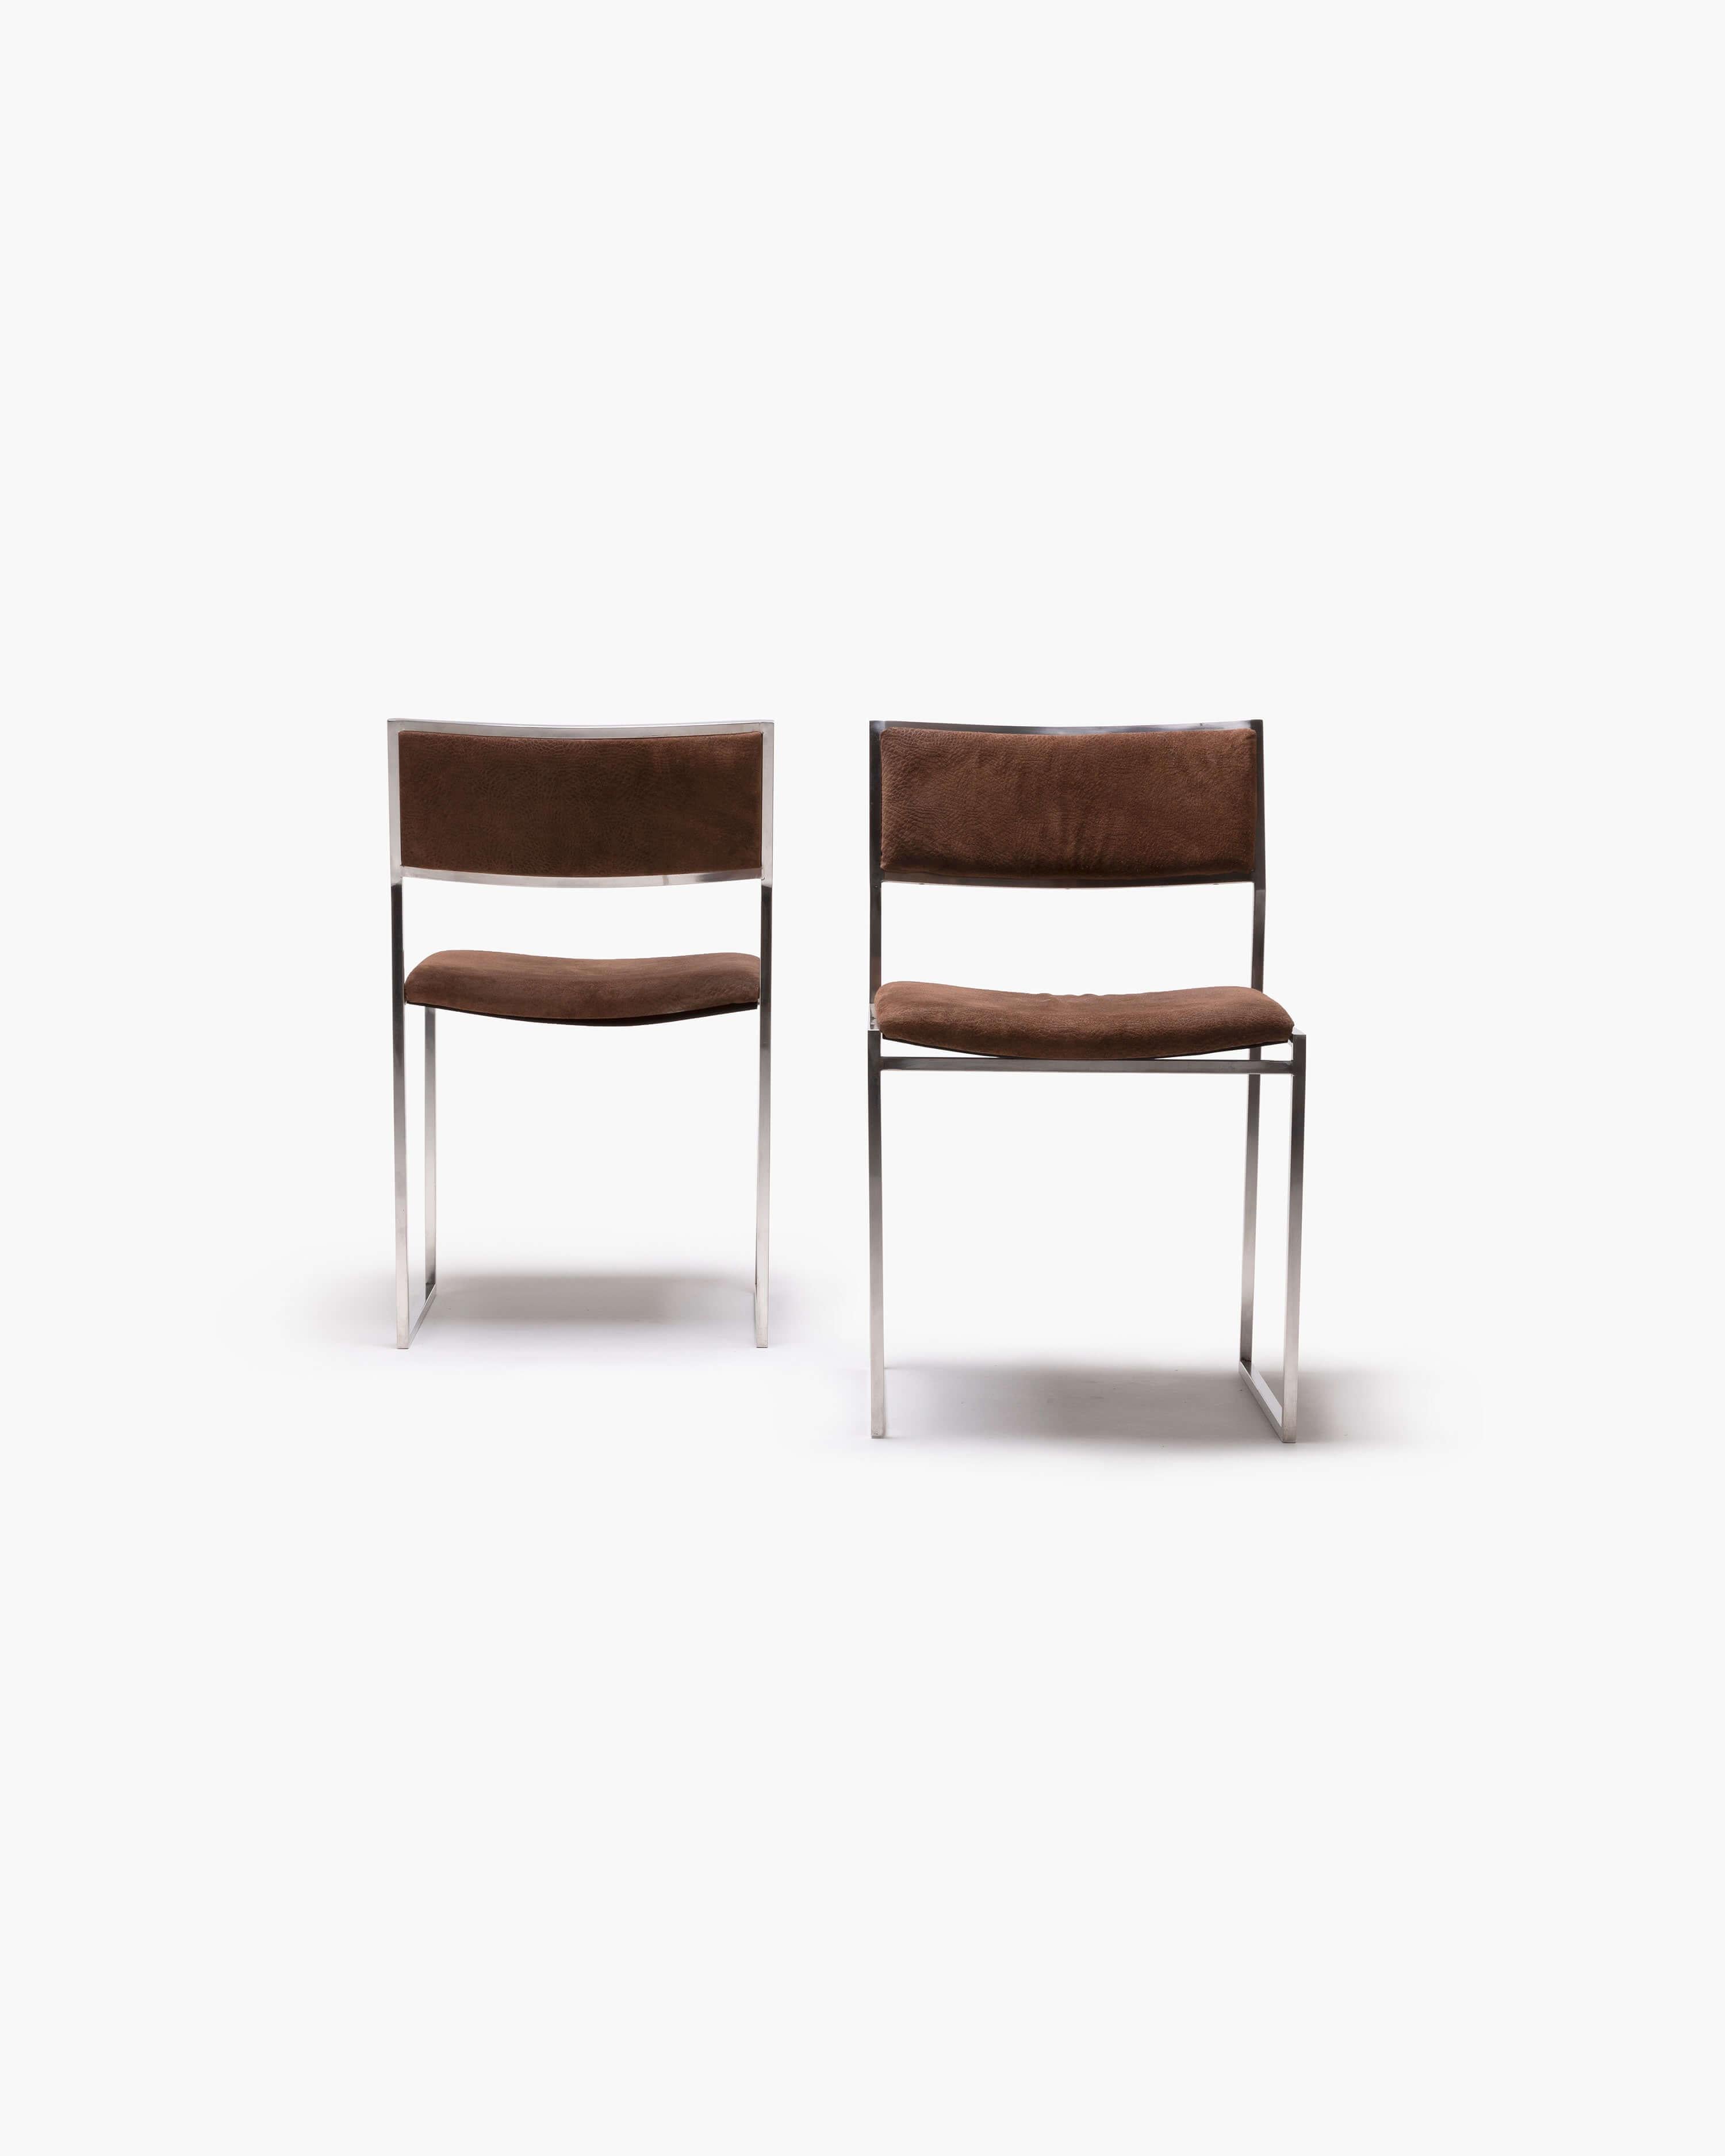 Erleben Sie das ikonische Design von Willy Rizzo mit diesem außergewöhnlichen Paar SQ-Stühle. Die 1970 gefertigten Stühle bestechen durch ihre markante Edelstahlstruktur, die zeitgenössische Eleganz ausstrahlt. Die auffällige Polsterung aus dunkel